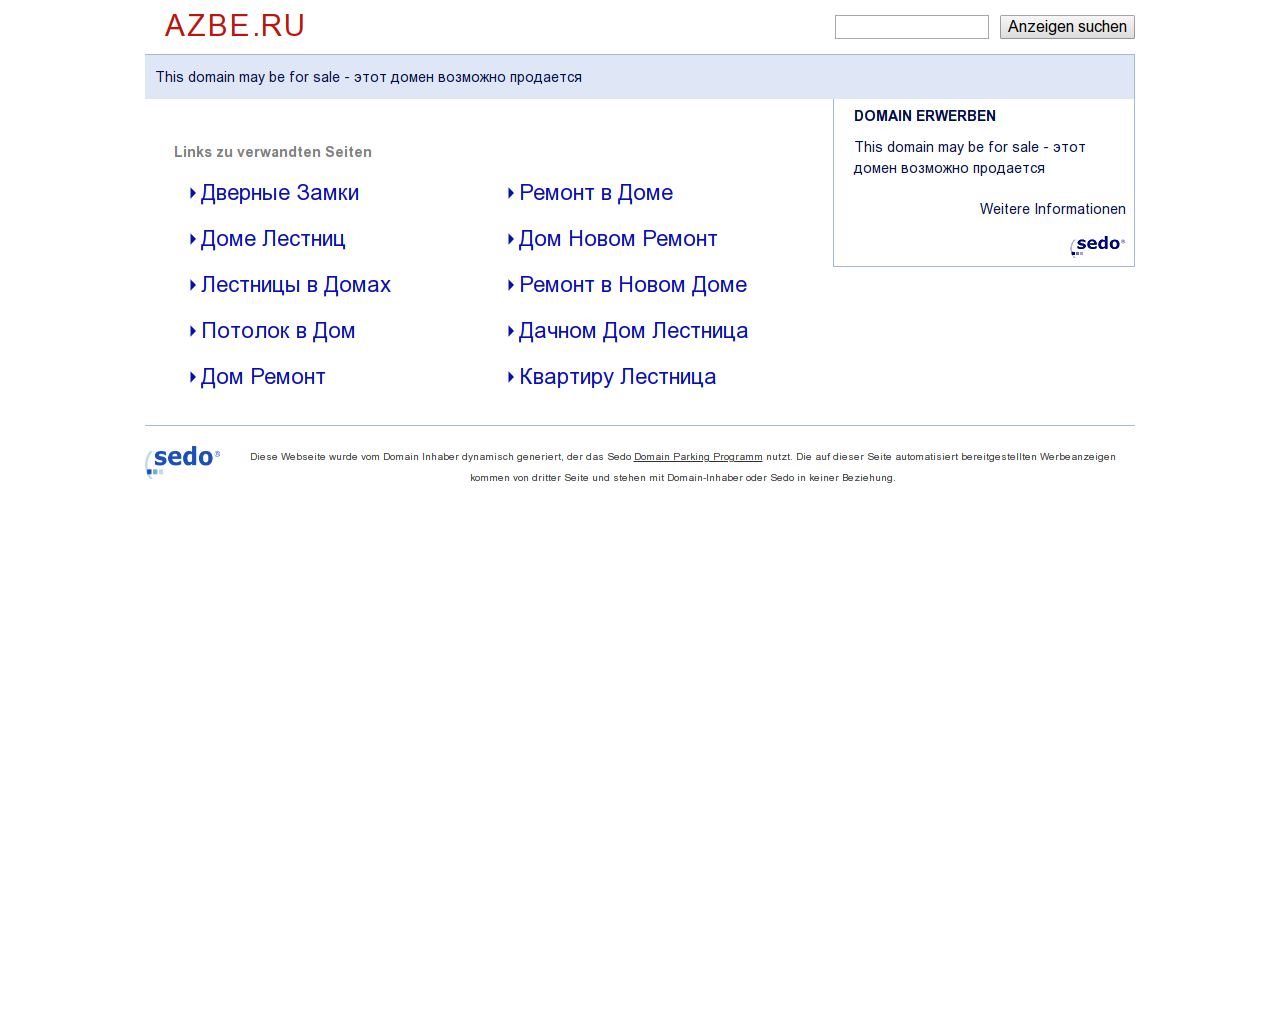 Изображение сайта azbe.ru в разрешении 1280x1024